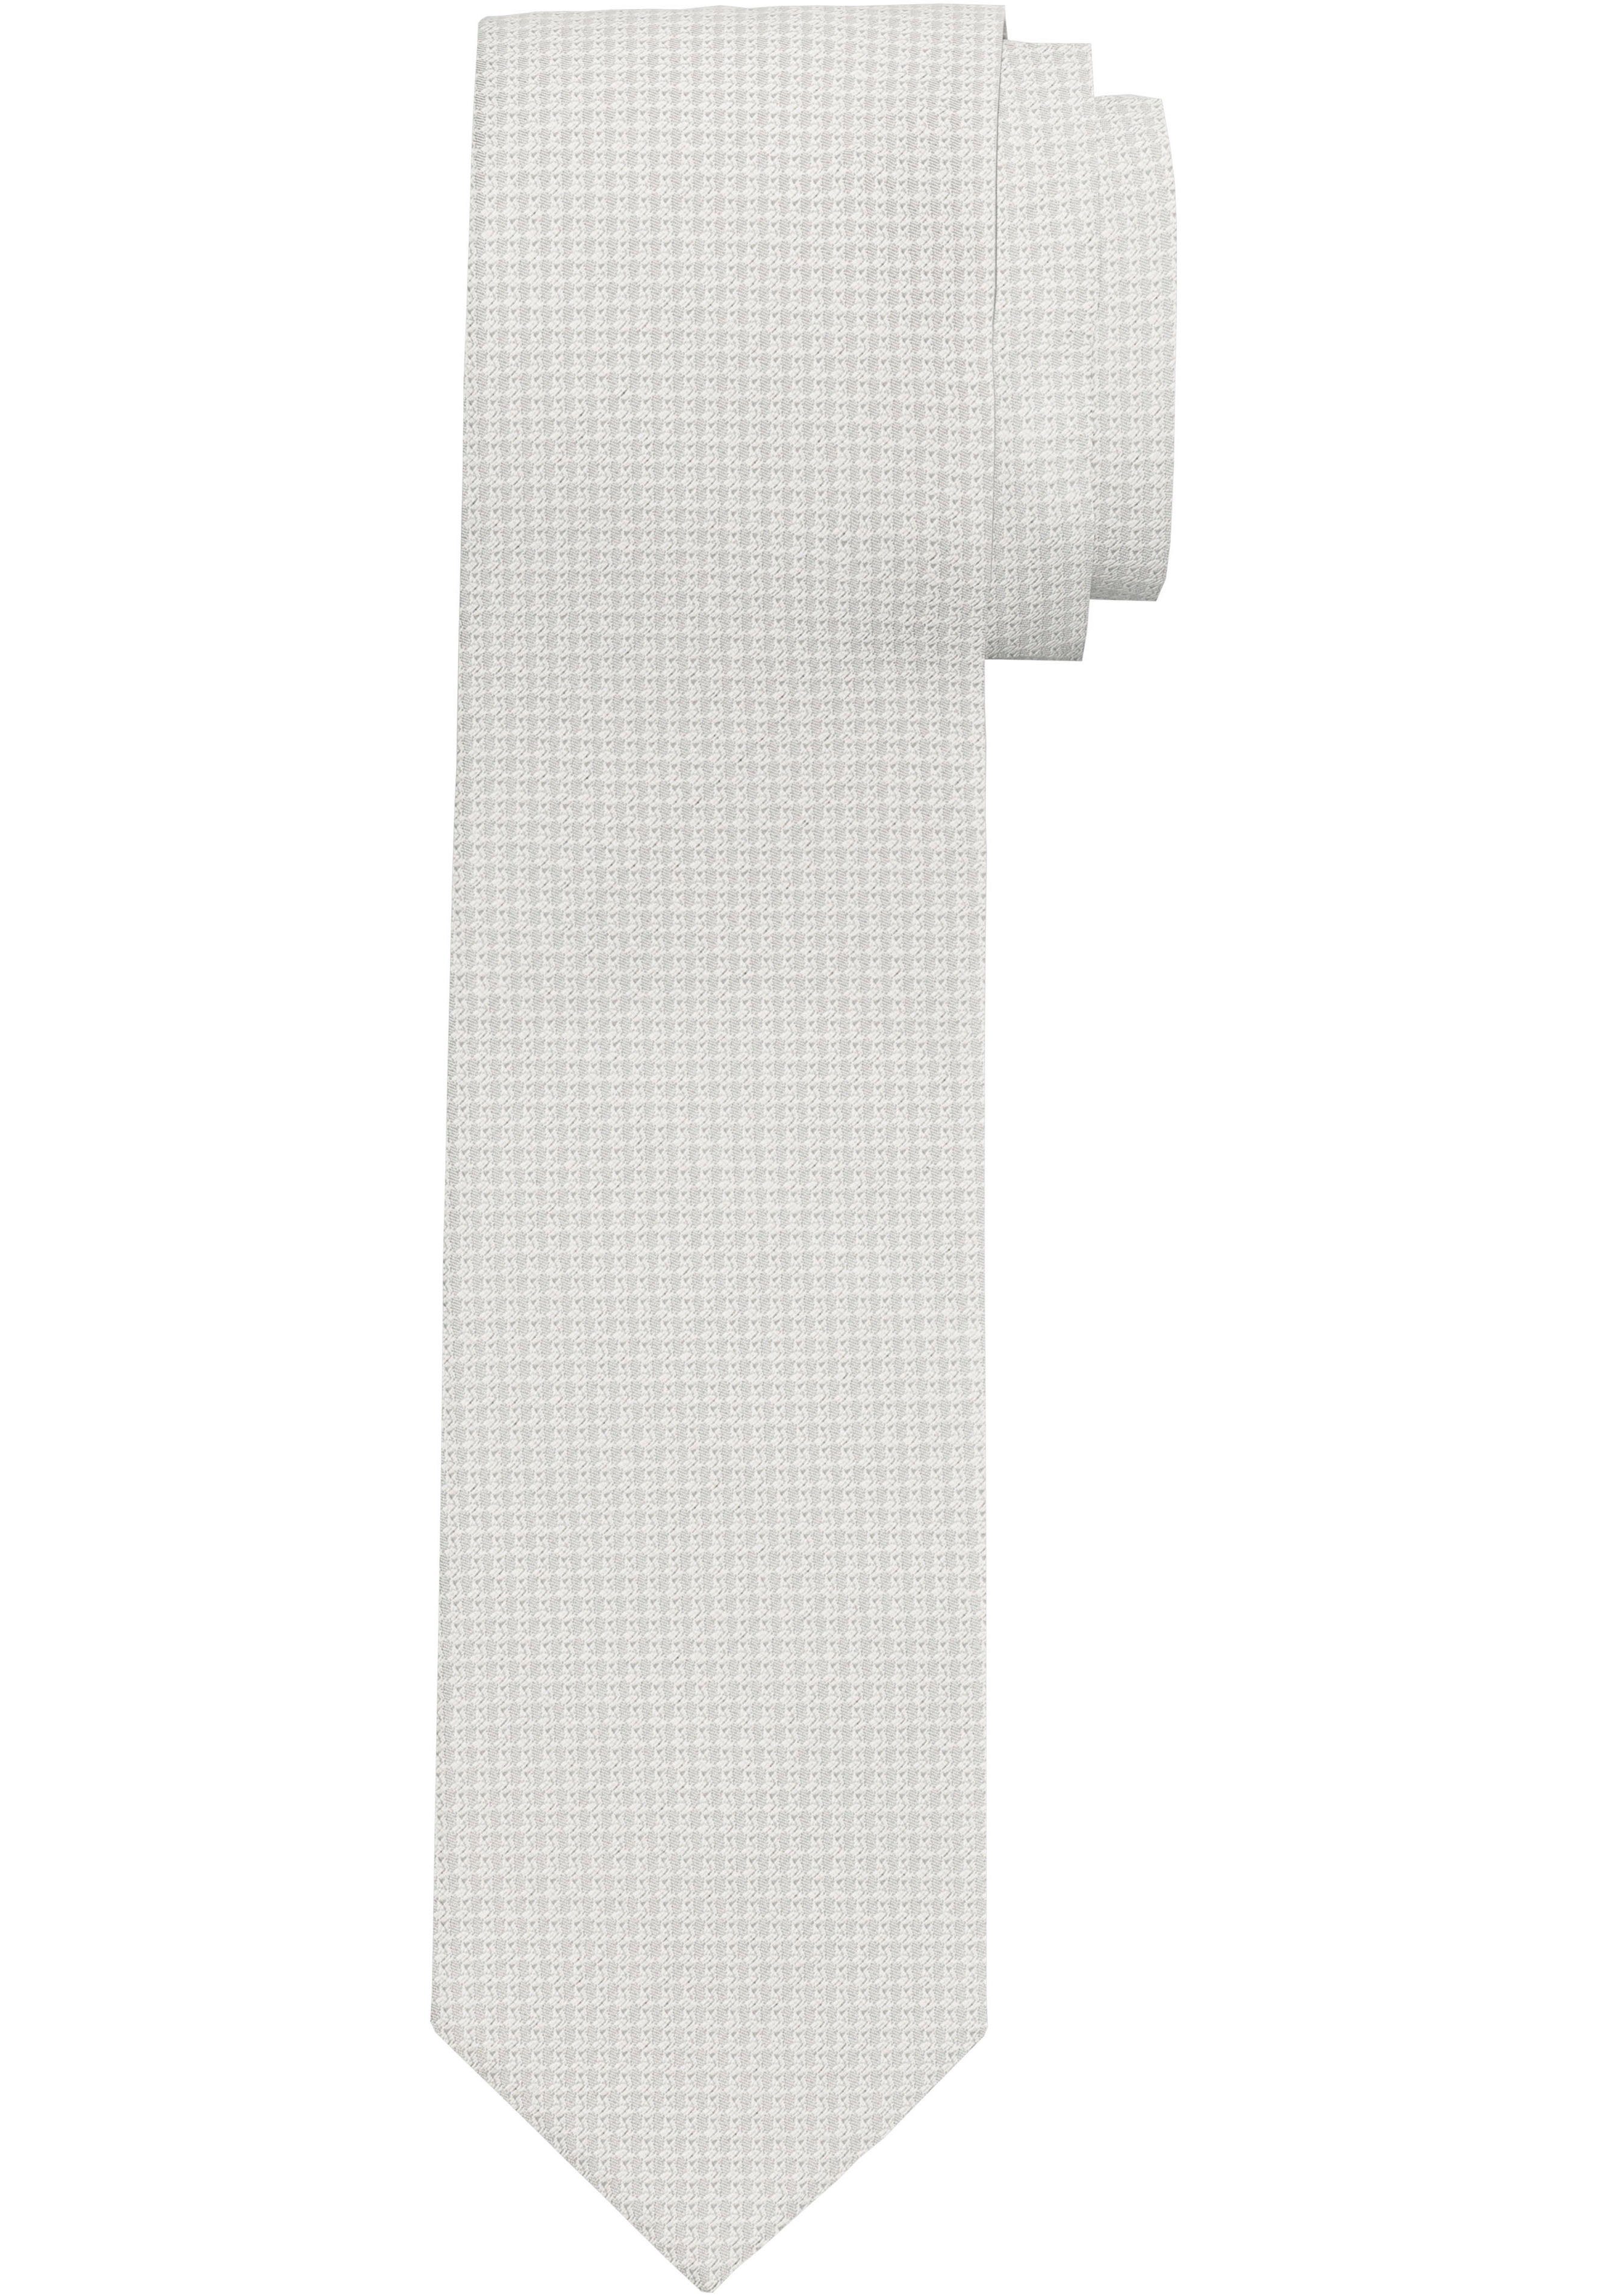 OLYMP Krawatte Krawatte mit Minimalmuster champagner